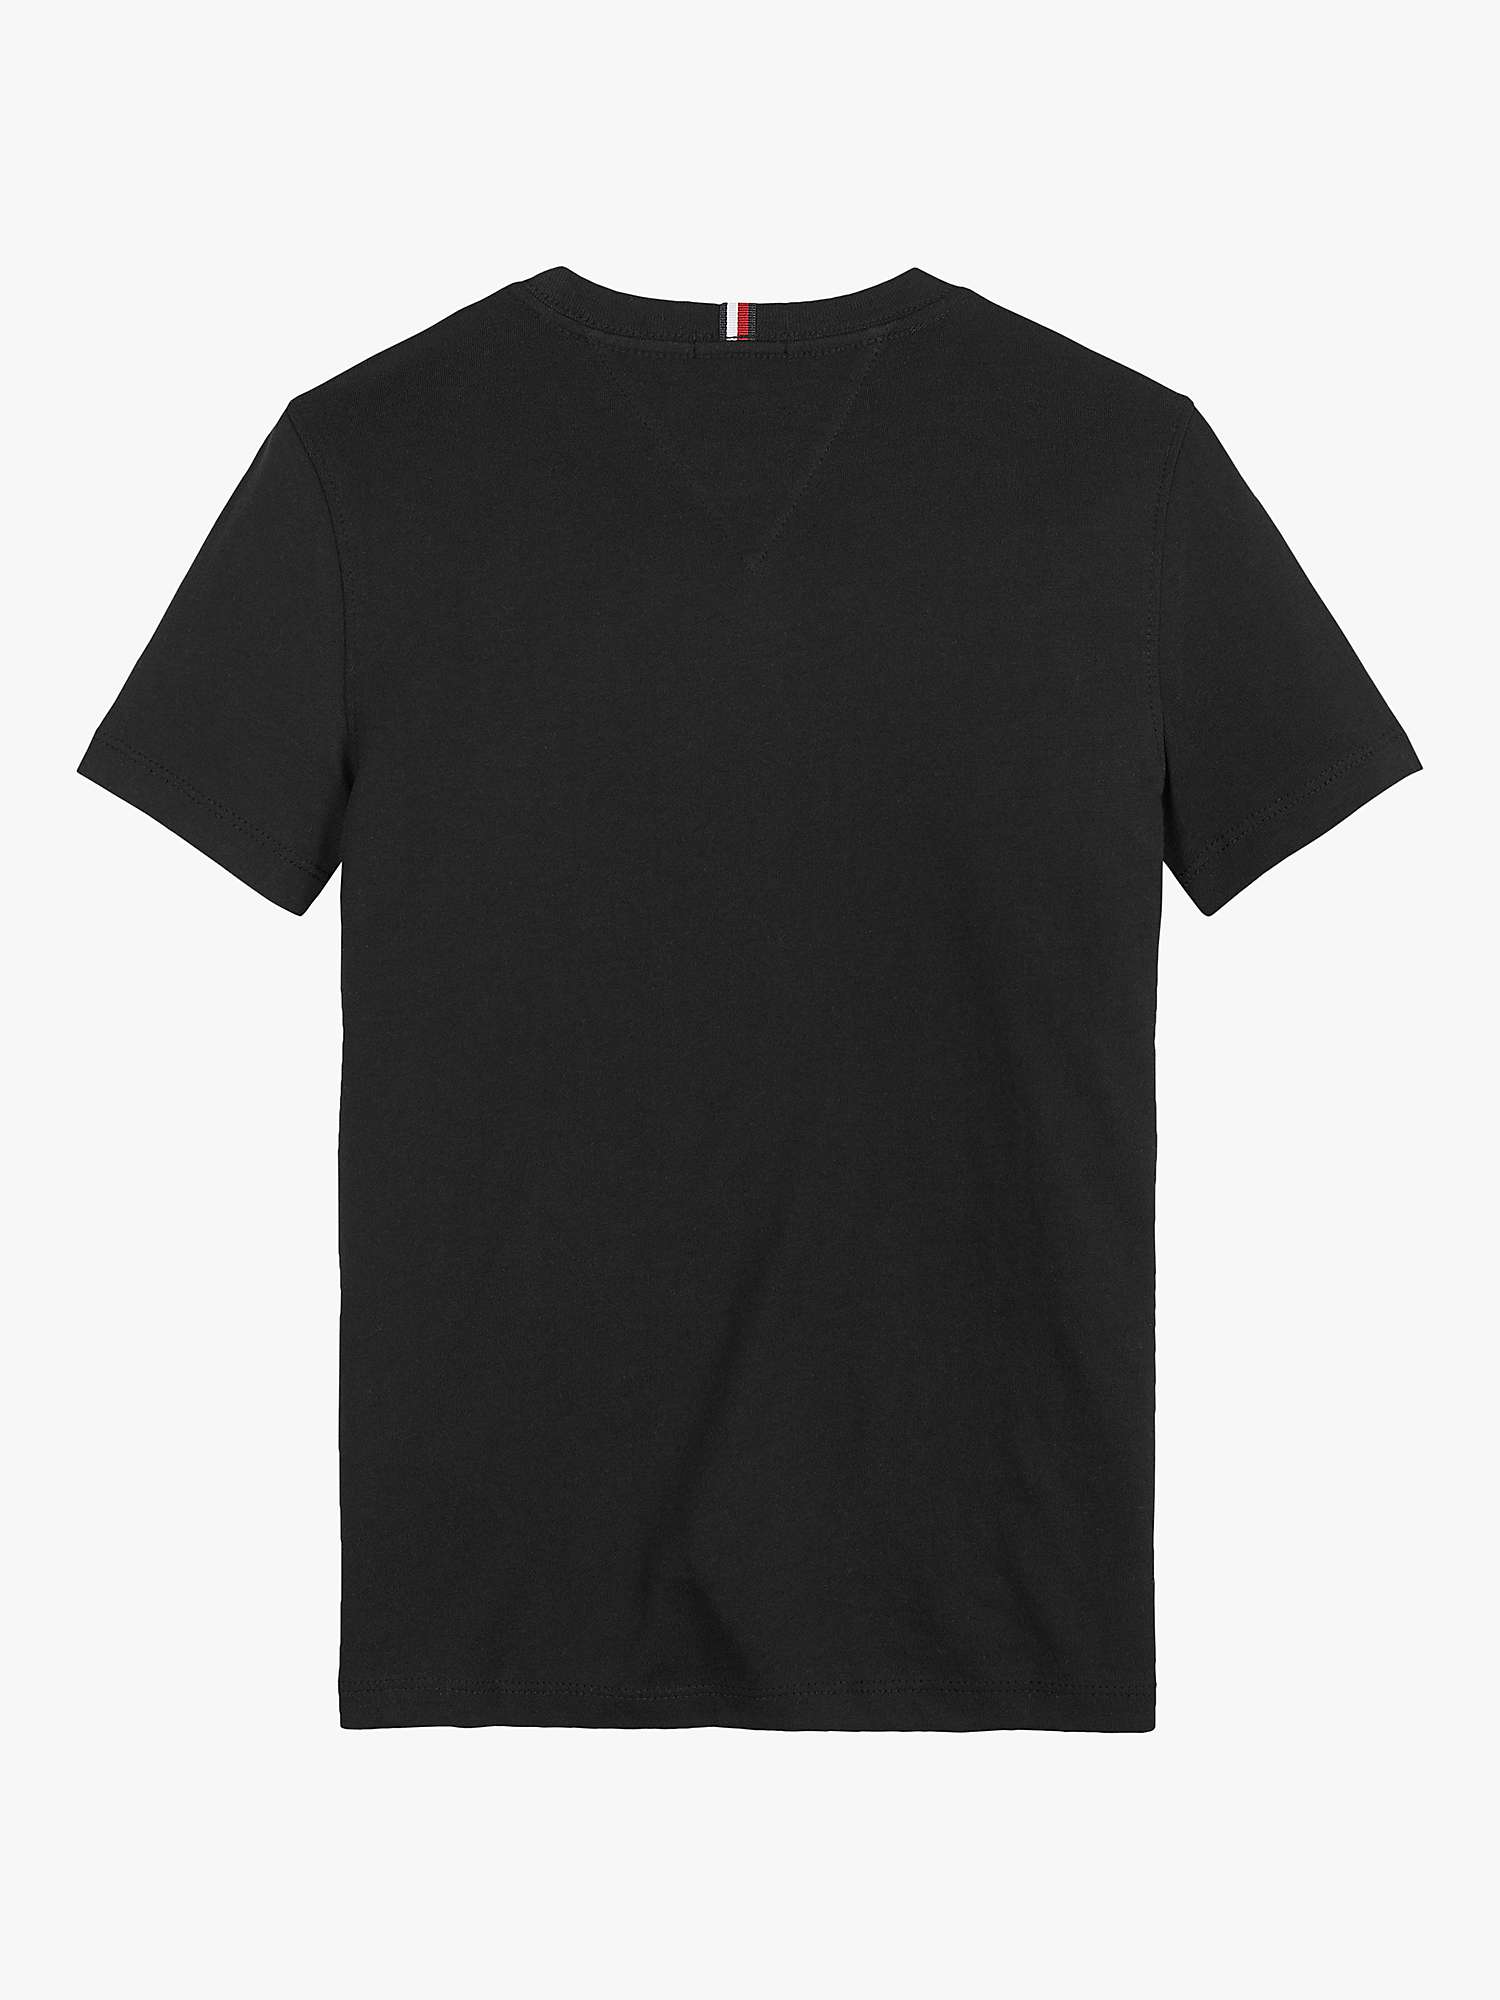 Buy Tommy Hilfiger Kids' Short Sleeve Essential T-Shirt Online at johnlewis.com